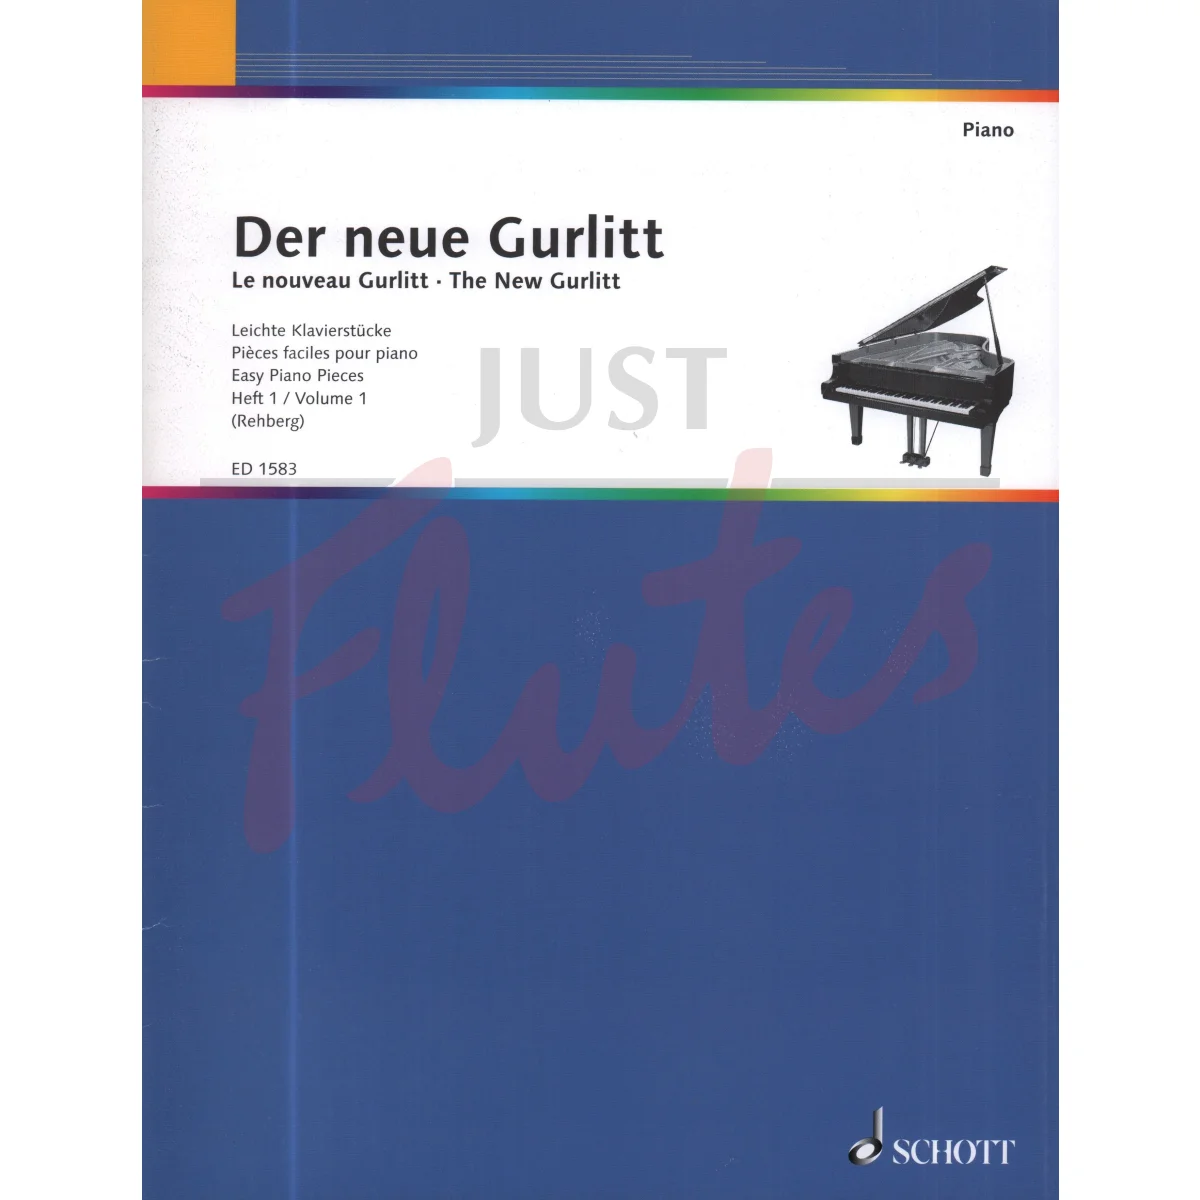 The New Gurlitt Volume 1 for Piano